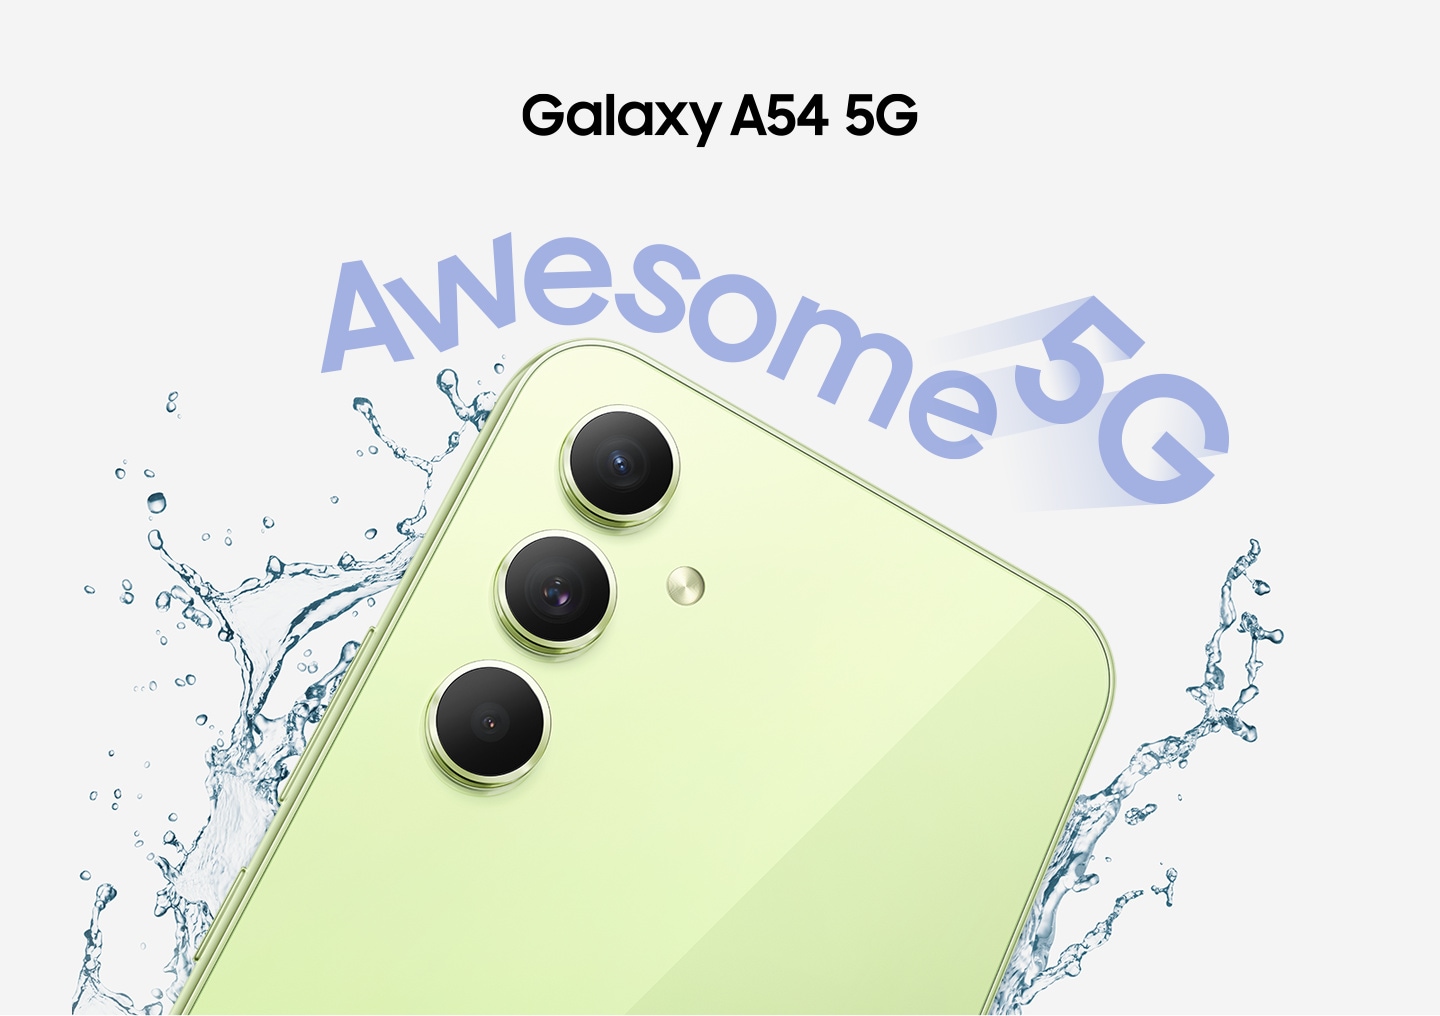 琉璃青 Galaxy A54 5G 背面的上半部分顯示有水滴在其周圍飛濺。 “真棒5G”。